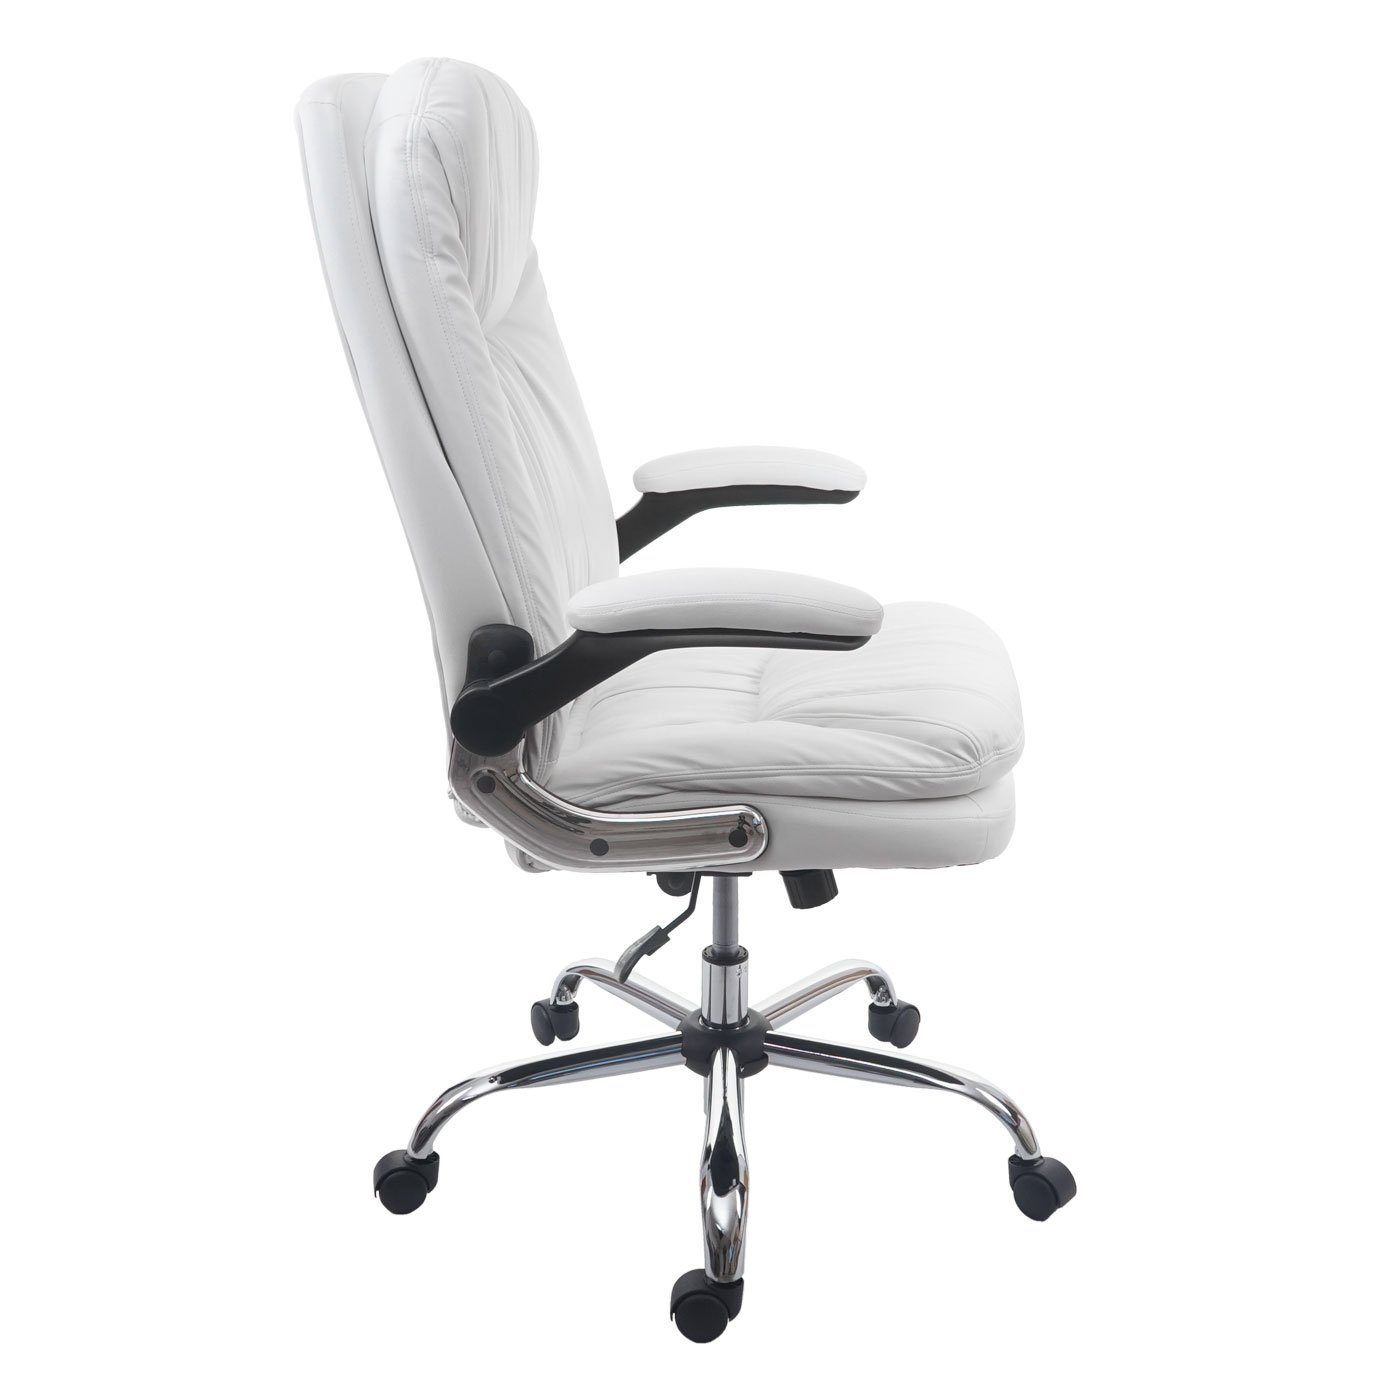 MCW-F81, MCW Armlehnen Schreibtischstuhl Wippmechanik Sitzfläche, Federkern klappbar, einstellbar weiß in